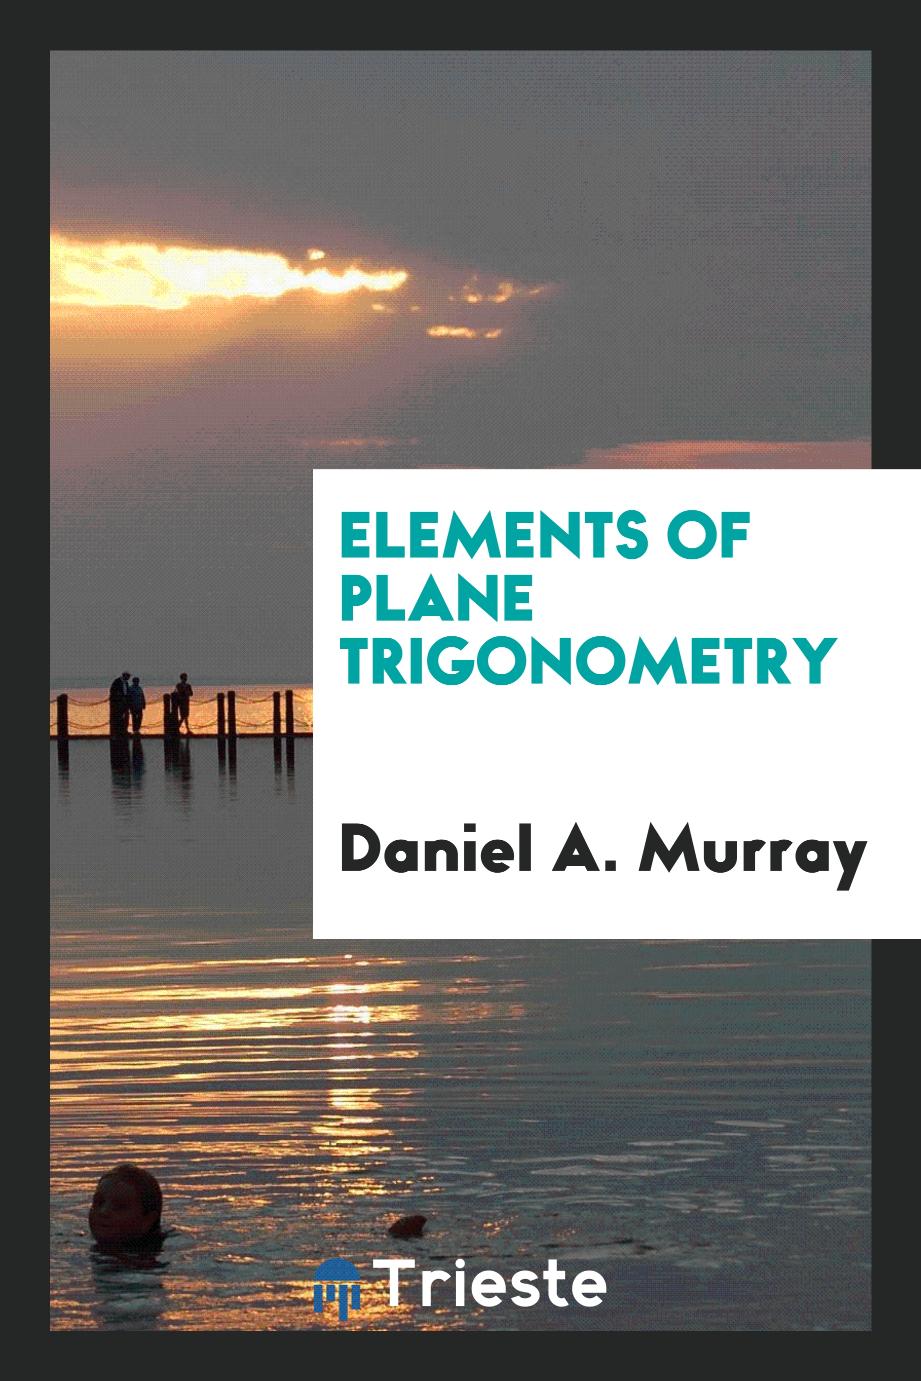 Elements of plane trigonometry